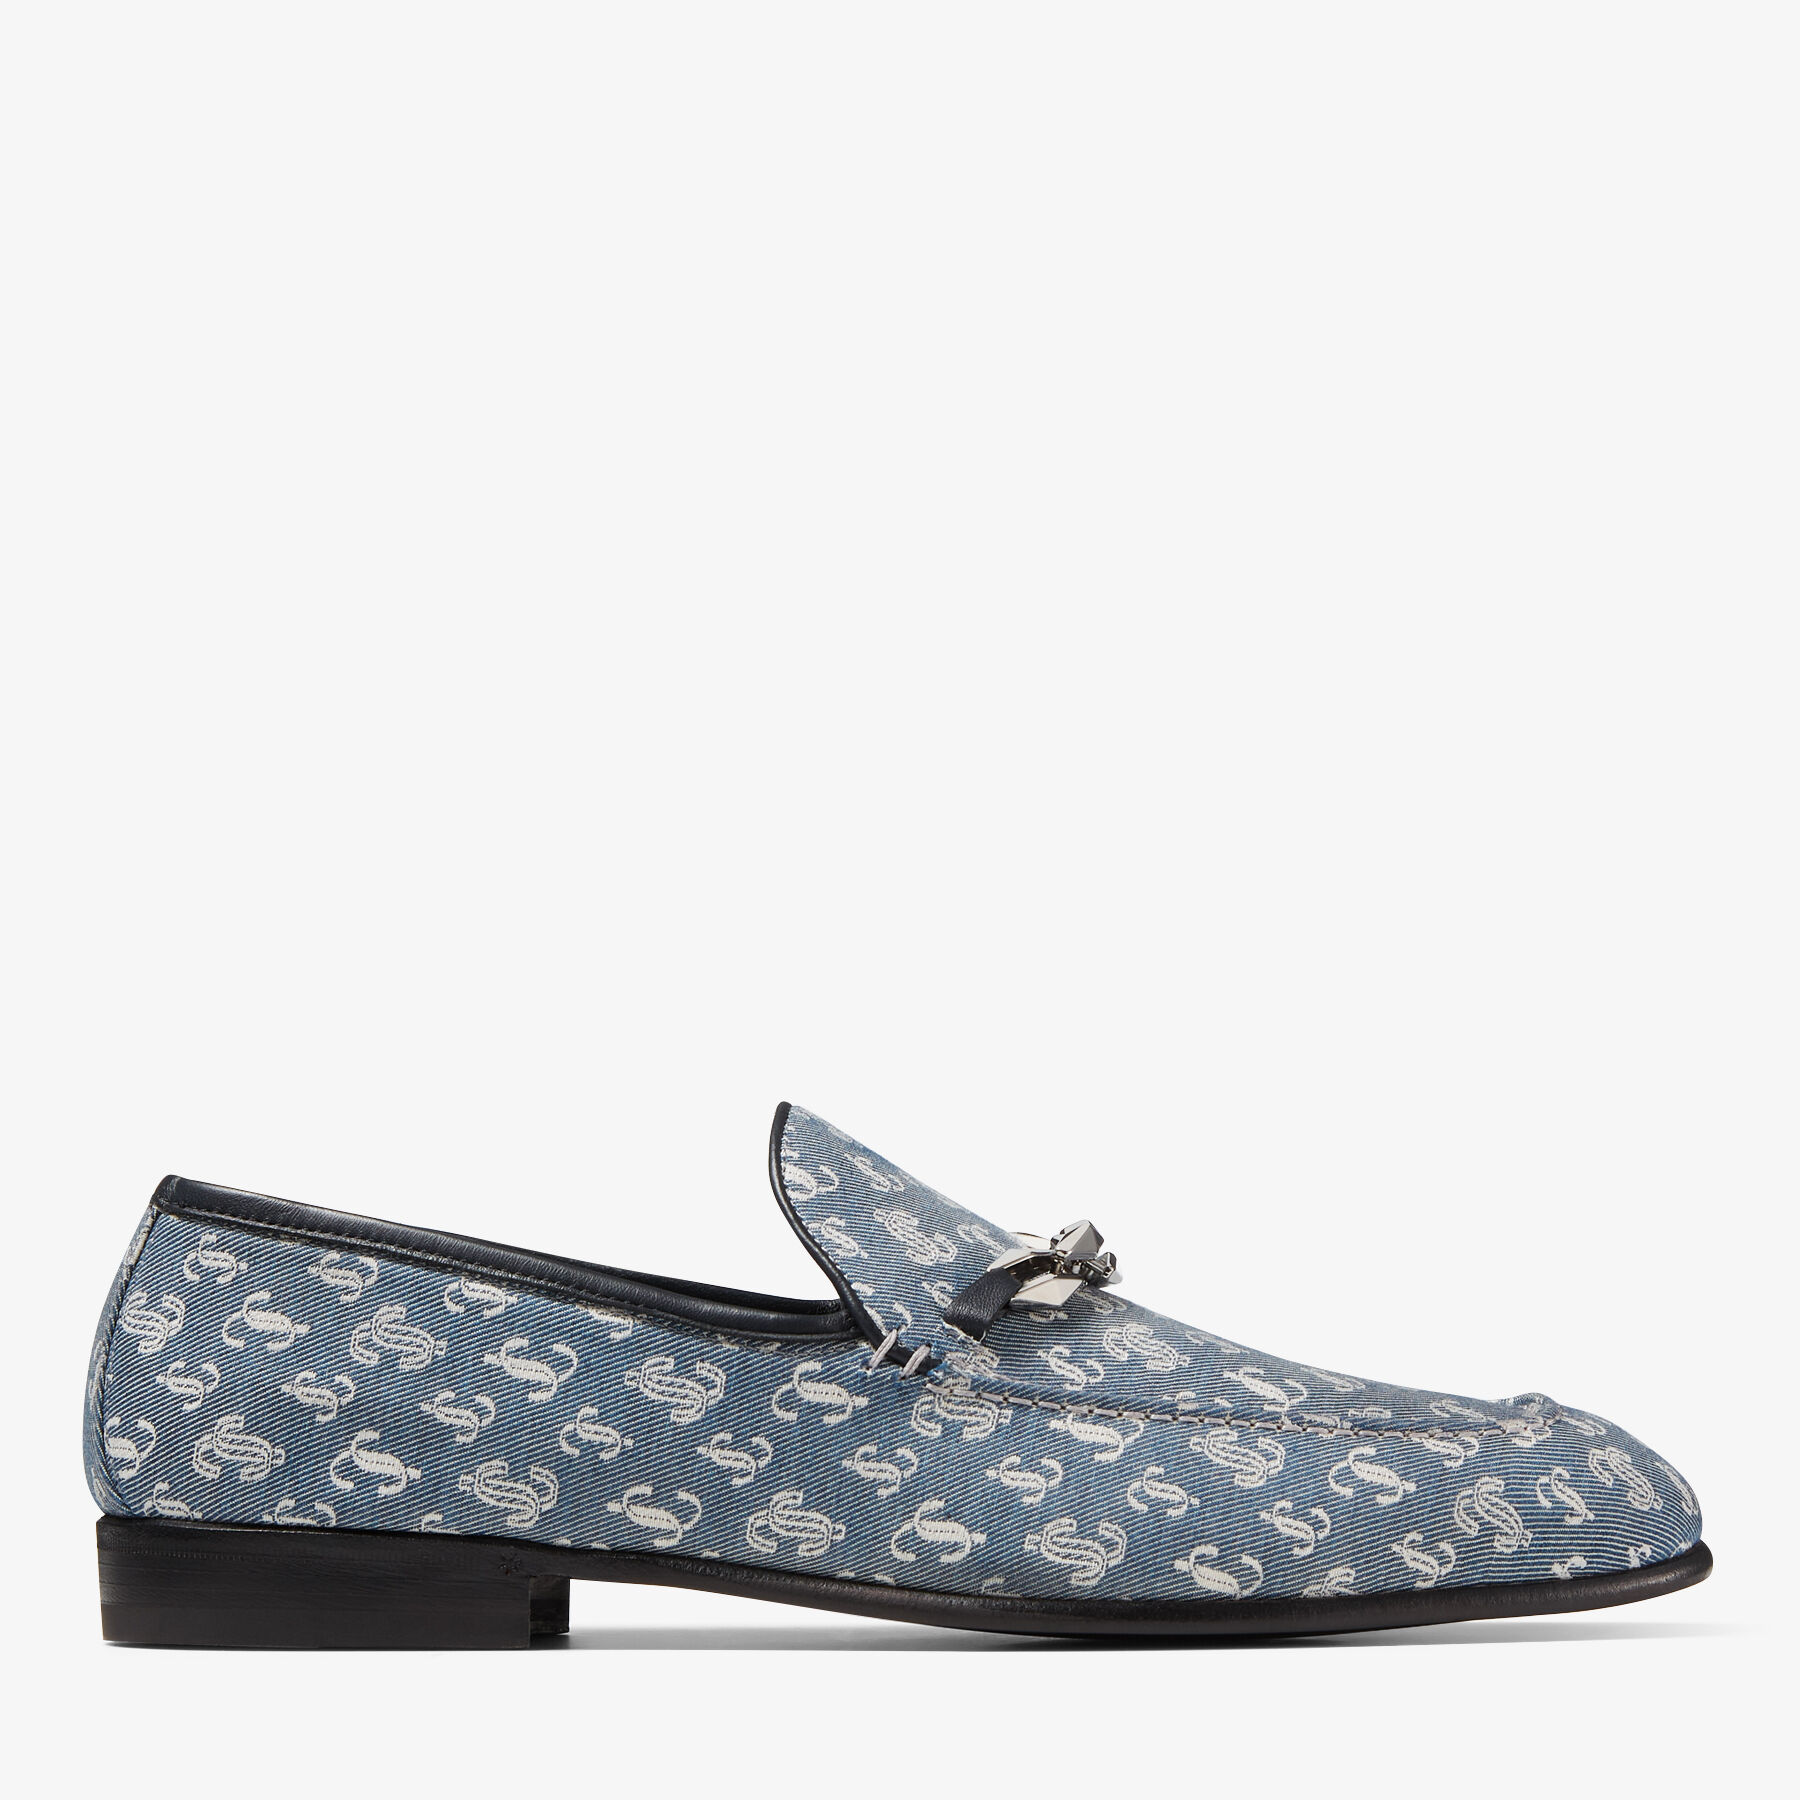 Louis Vuitton, Shoes, Louis Vuitton Monogram Denim Wedge Sandals Size 355